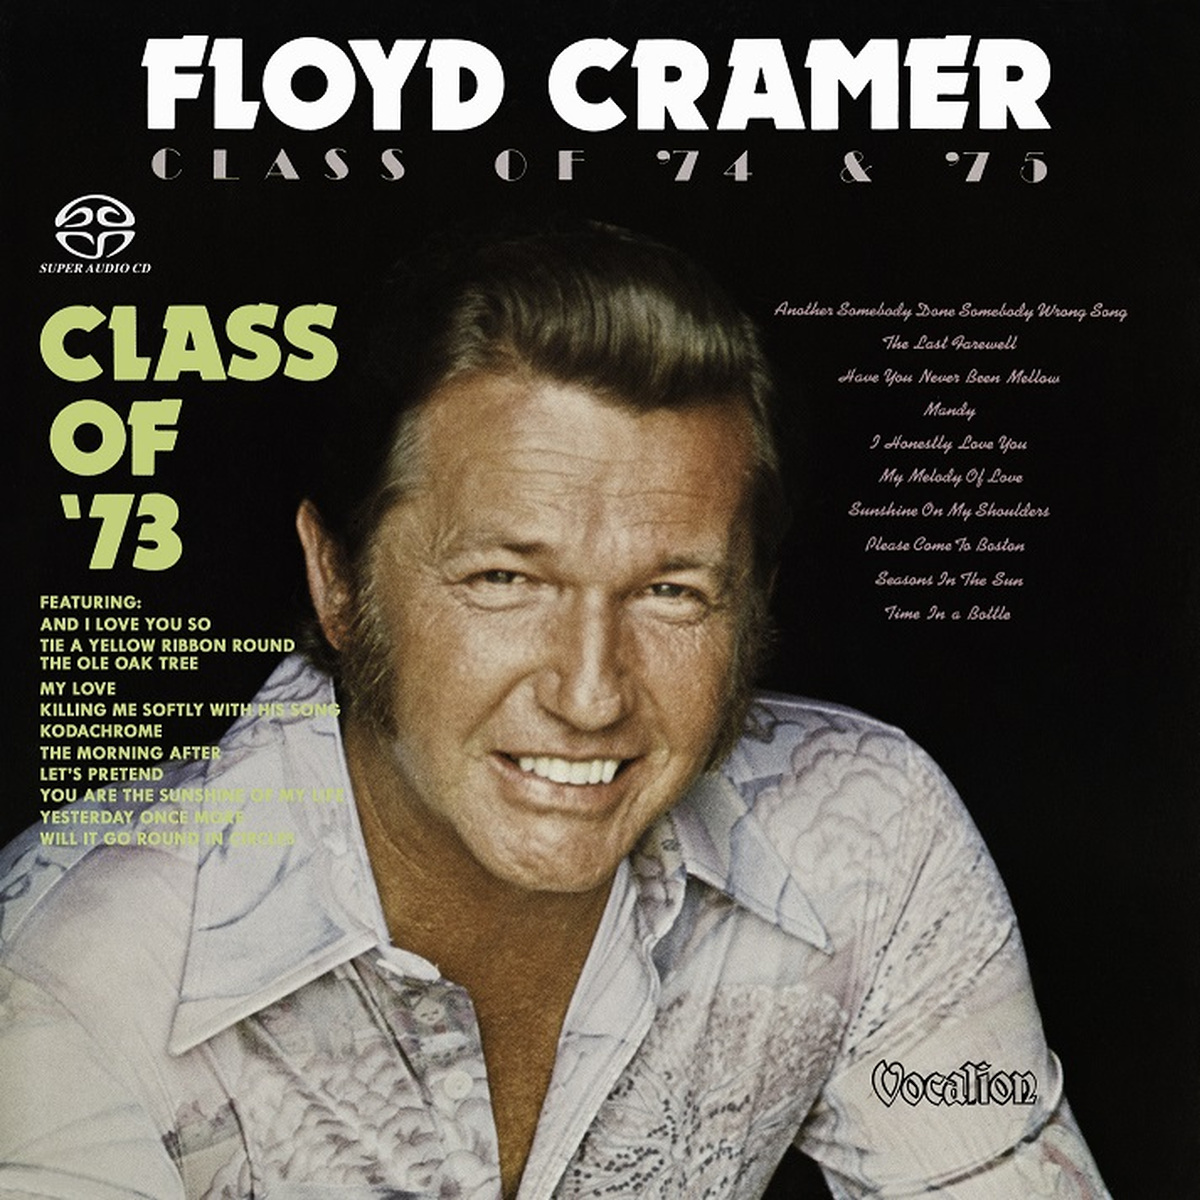 Floyd Cramer – Class Of ’73 & Class Of ’74-’75 (1973/1975) [Reissue 2016] MCH SACD ISO + FLAC 24bit/88,2kHz